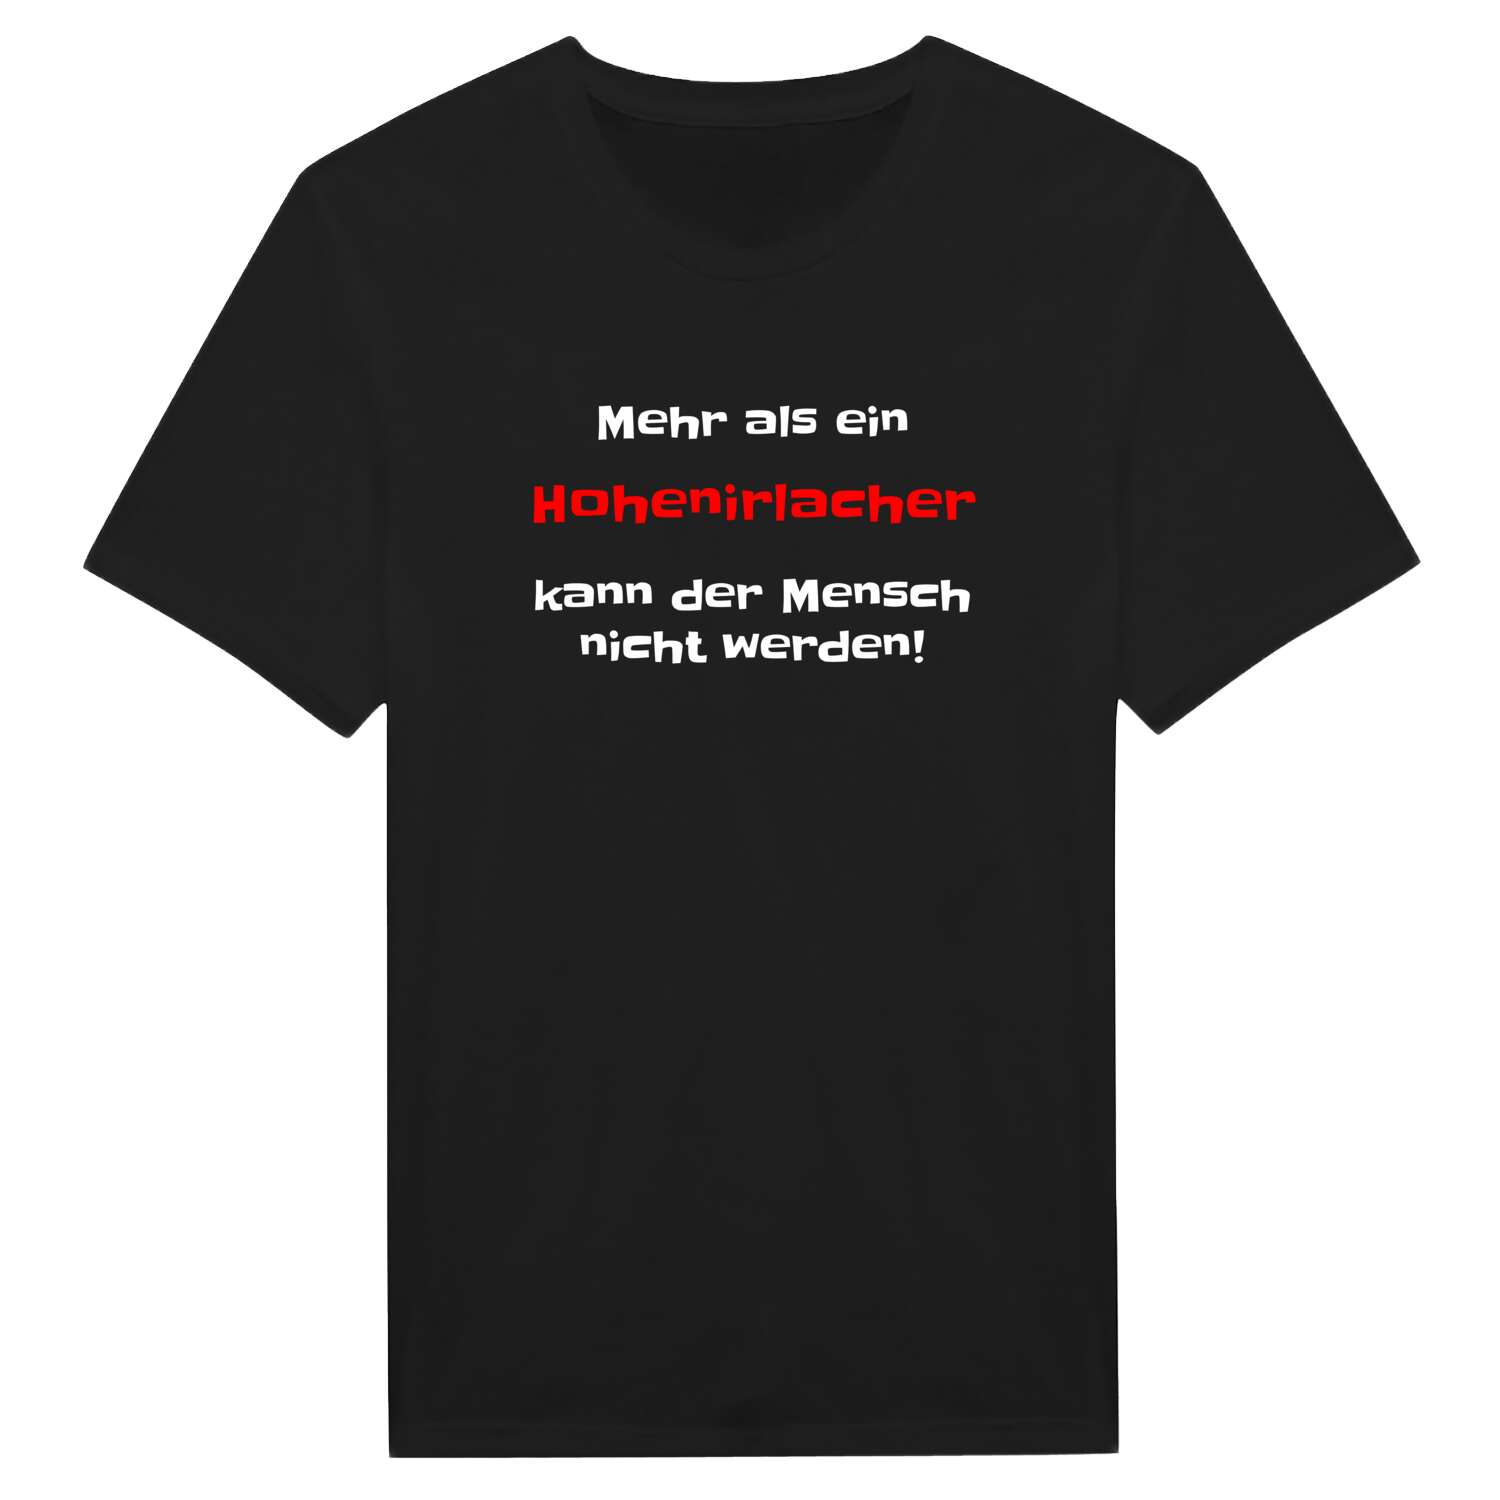 Hohenirlach T-Shirt »Mehr als ein«